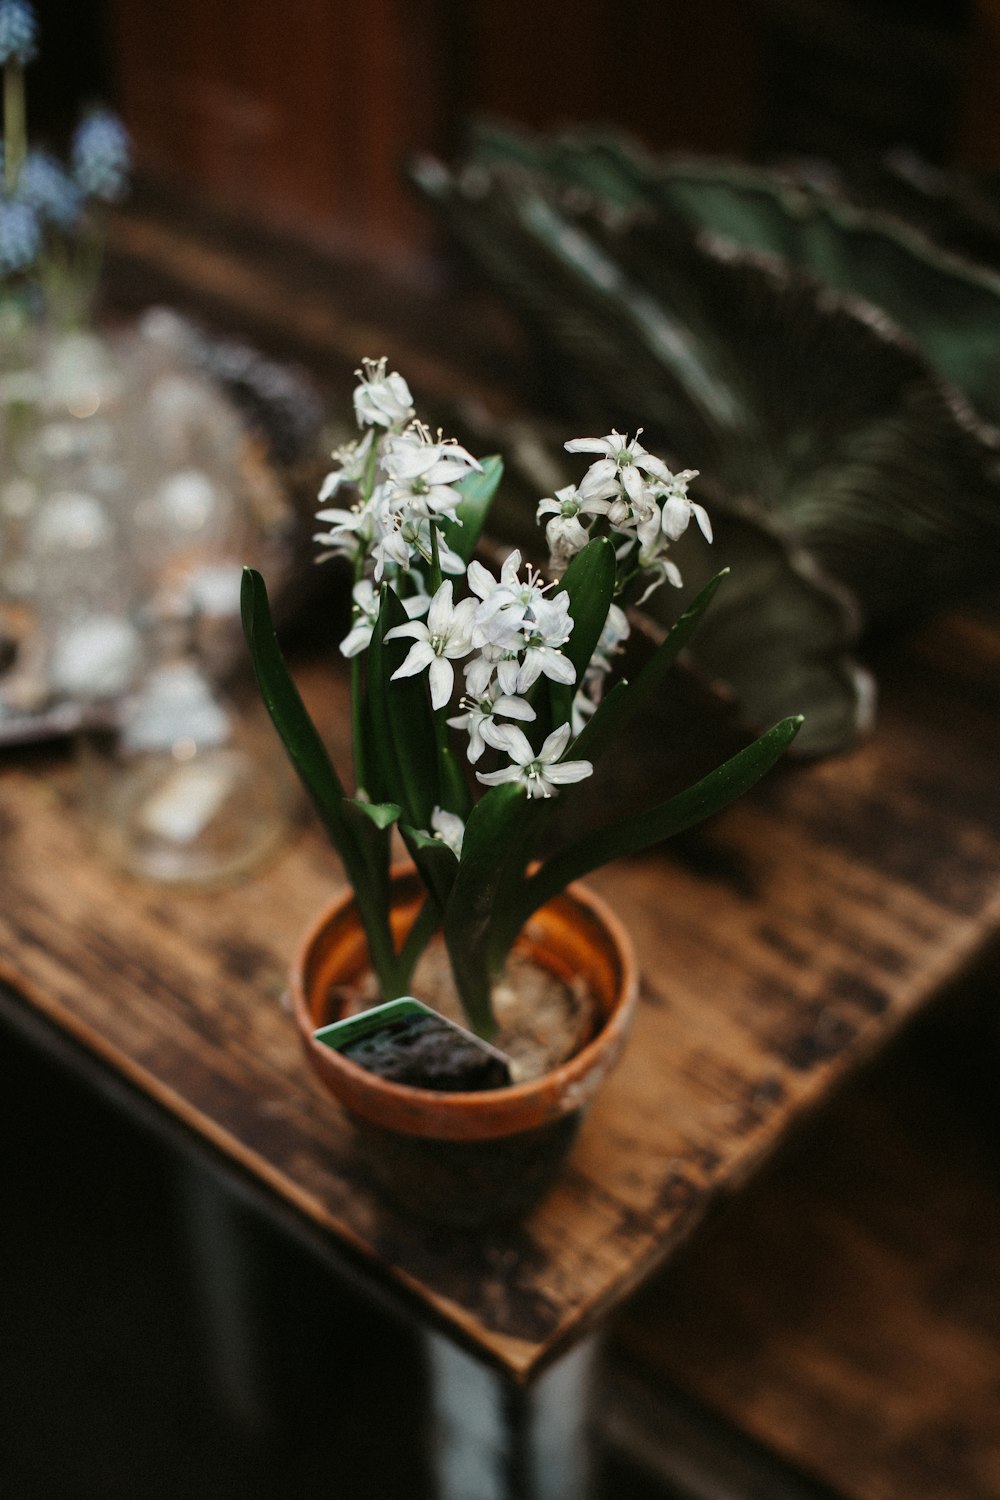 茶色の木製のテーブルに白い花